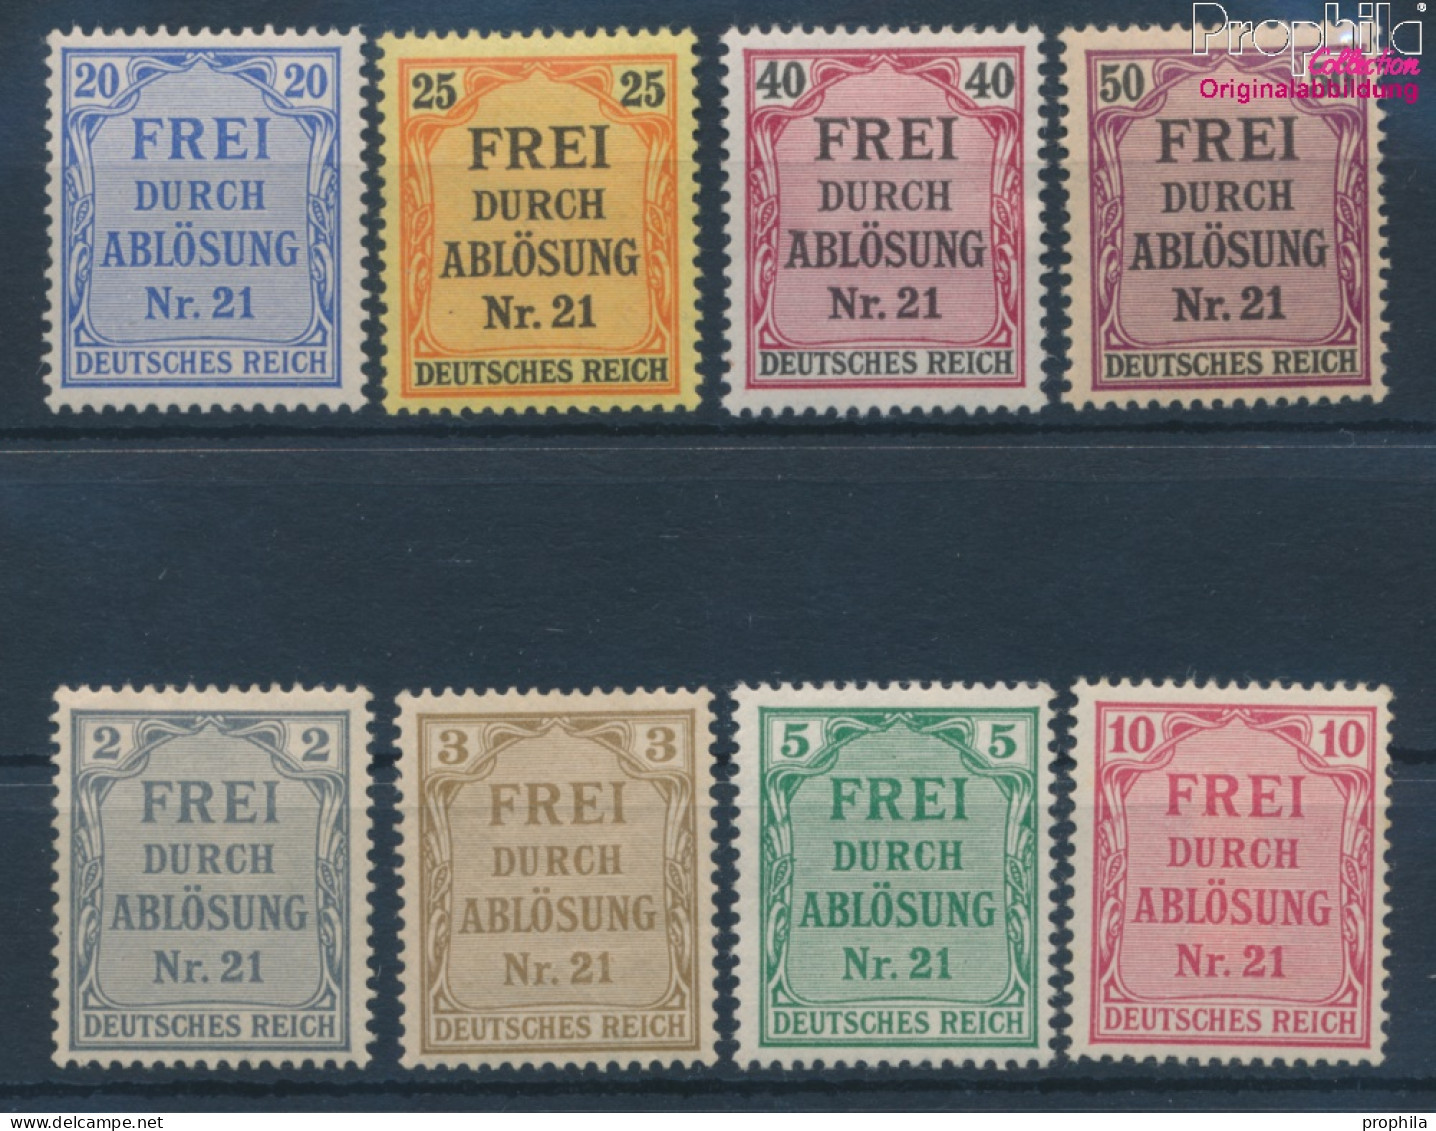 Deutsches Reich D1-D8 (kompl.Ausg.) Mit Falz 1903 Dienstmarken (10342602 - Unused Stamps